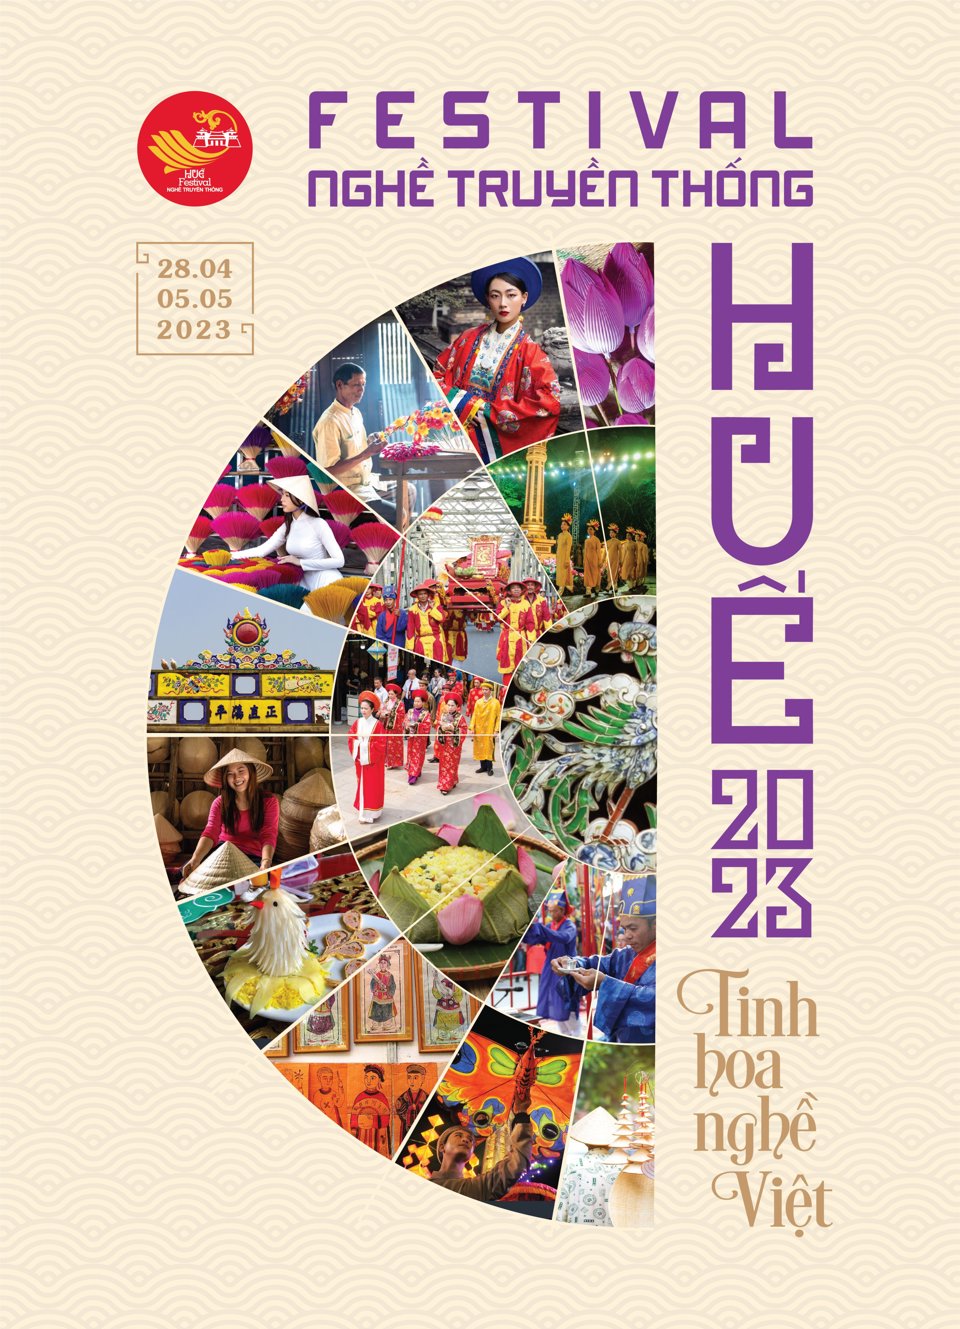 Festival Nghề truyền thống Huế 2023 với chủ đề &ldquo;Tinh hoa Nghề Việt&rdquo; sẽ diễn từ ng&agrave;y 28/4 - 5/5.